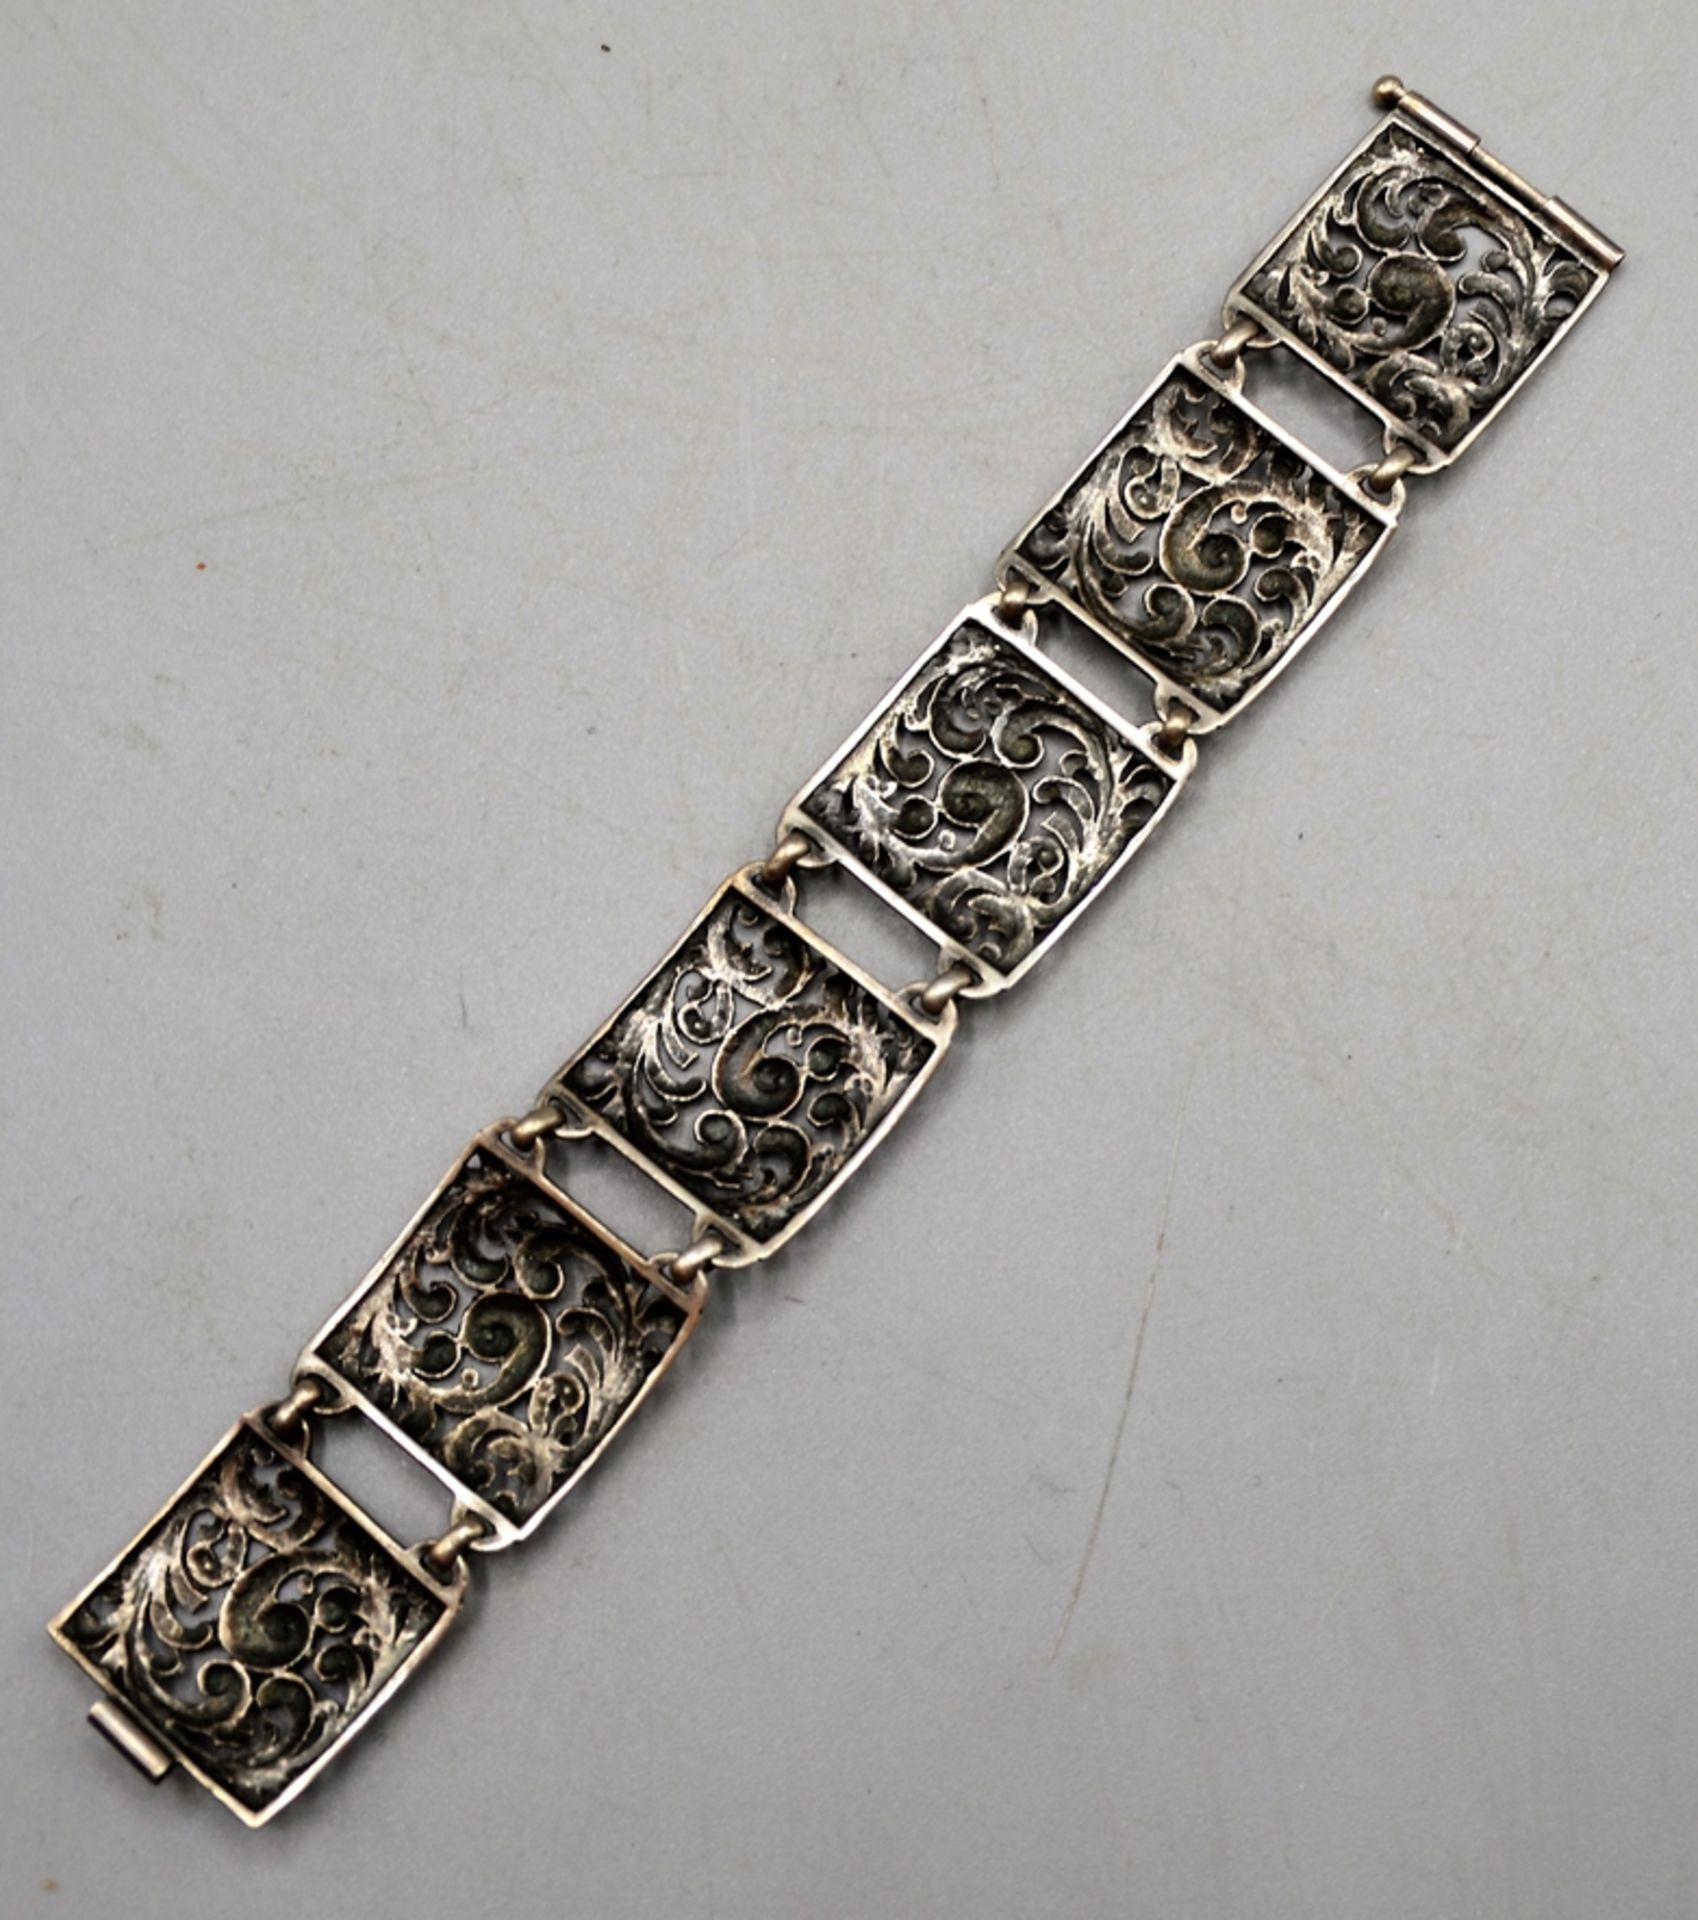 Silberarmband m. Ranken Ornamenten durchbrochen, 800 Silber, ca. 17,5 cm, Breite 2,4 cm, 21,5 cm - Image 2 of 2